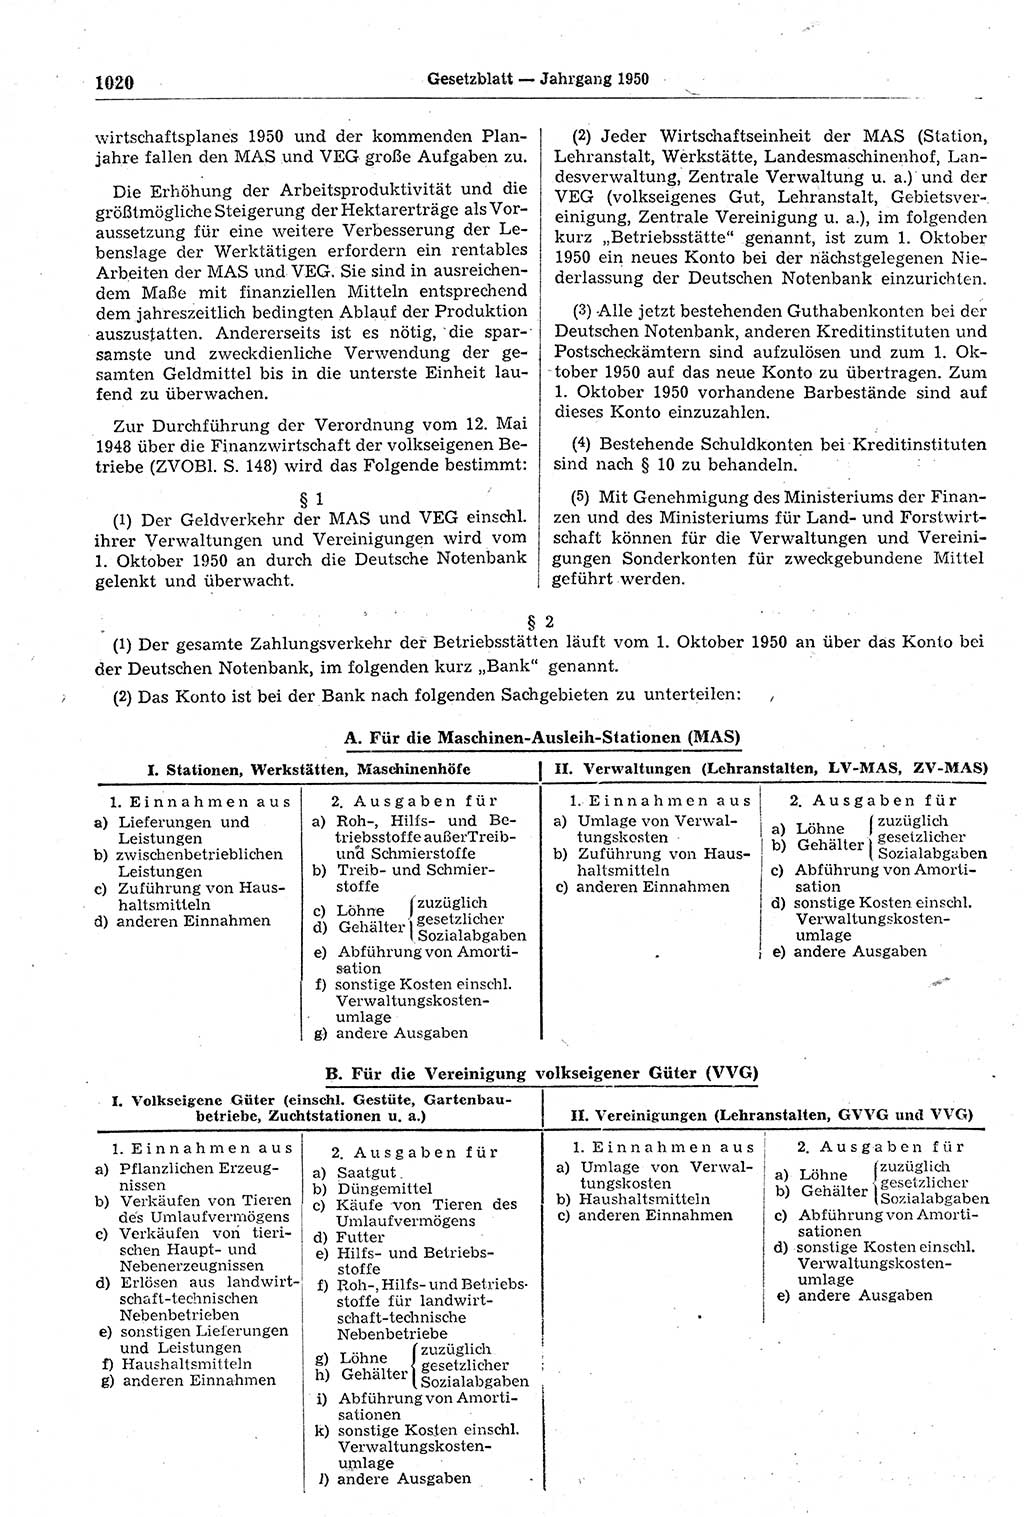 Gesetzblatt (GBl.) der Deutschen Demokratischen Republik (DDR) 1950, Seite 1020 (GBl. DDR 1950, S. 1020)